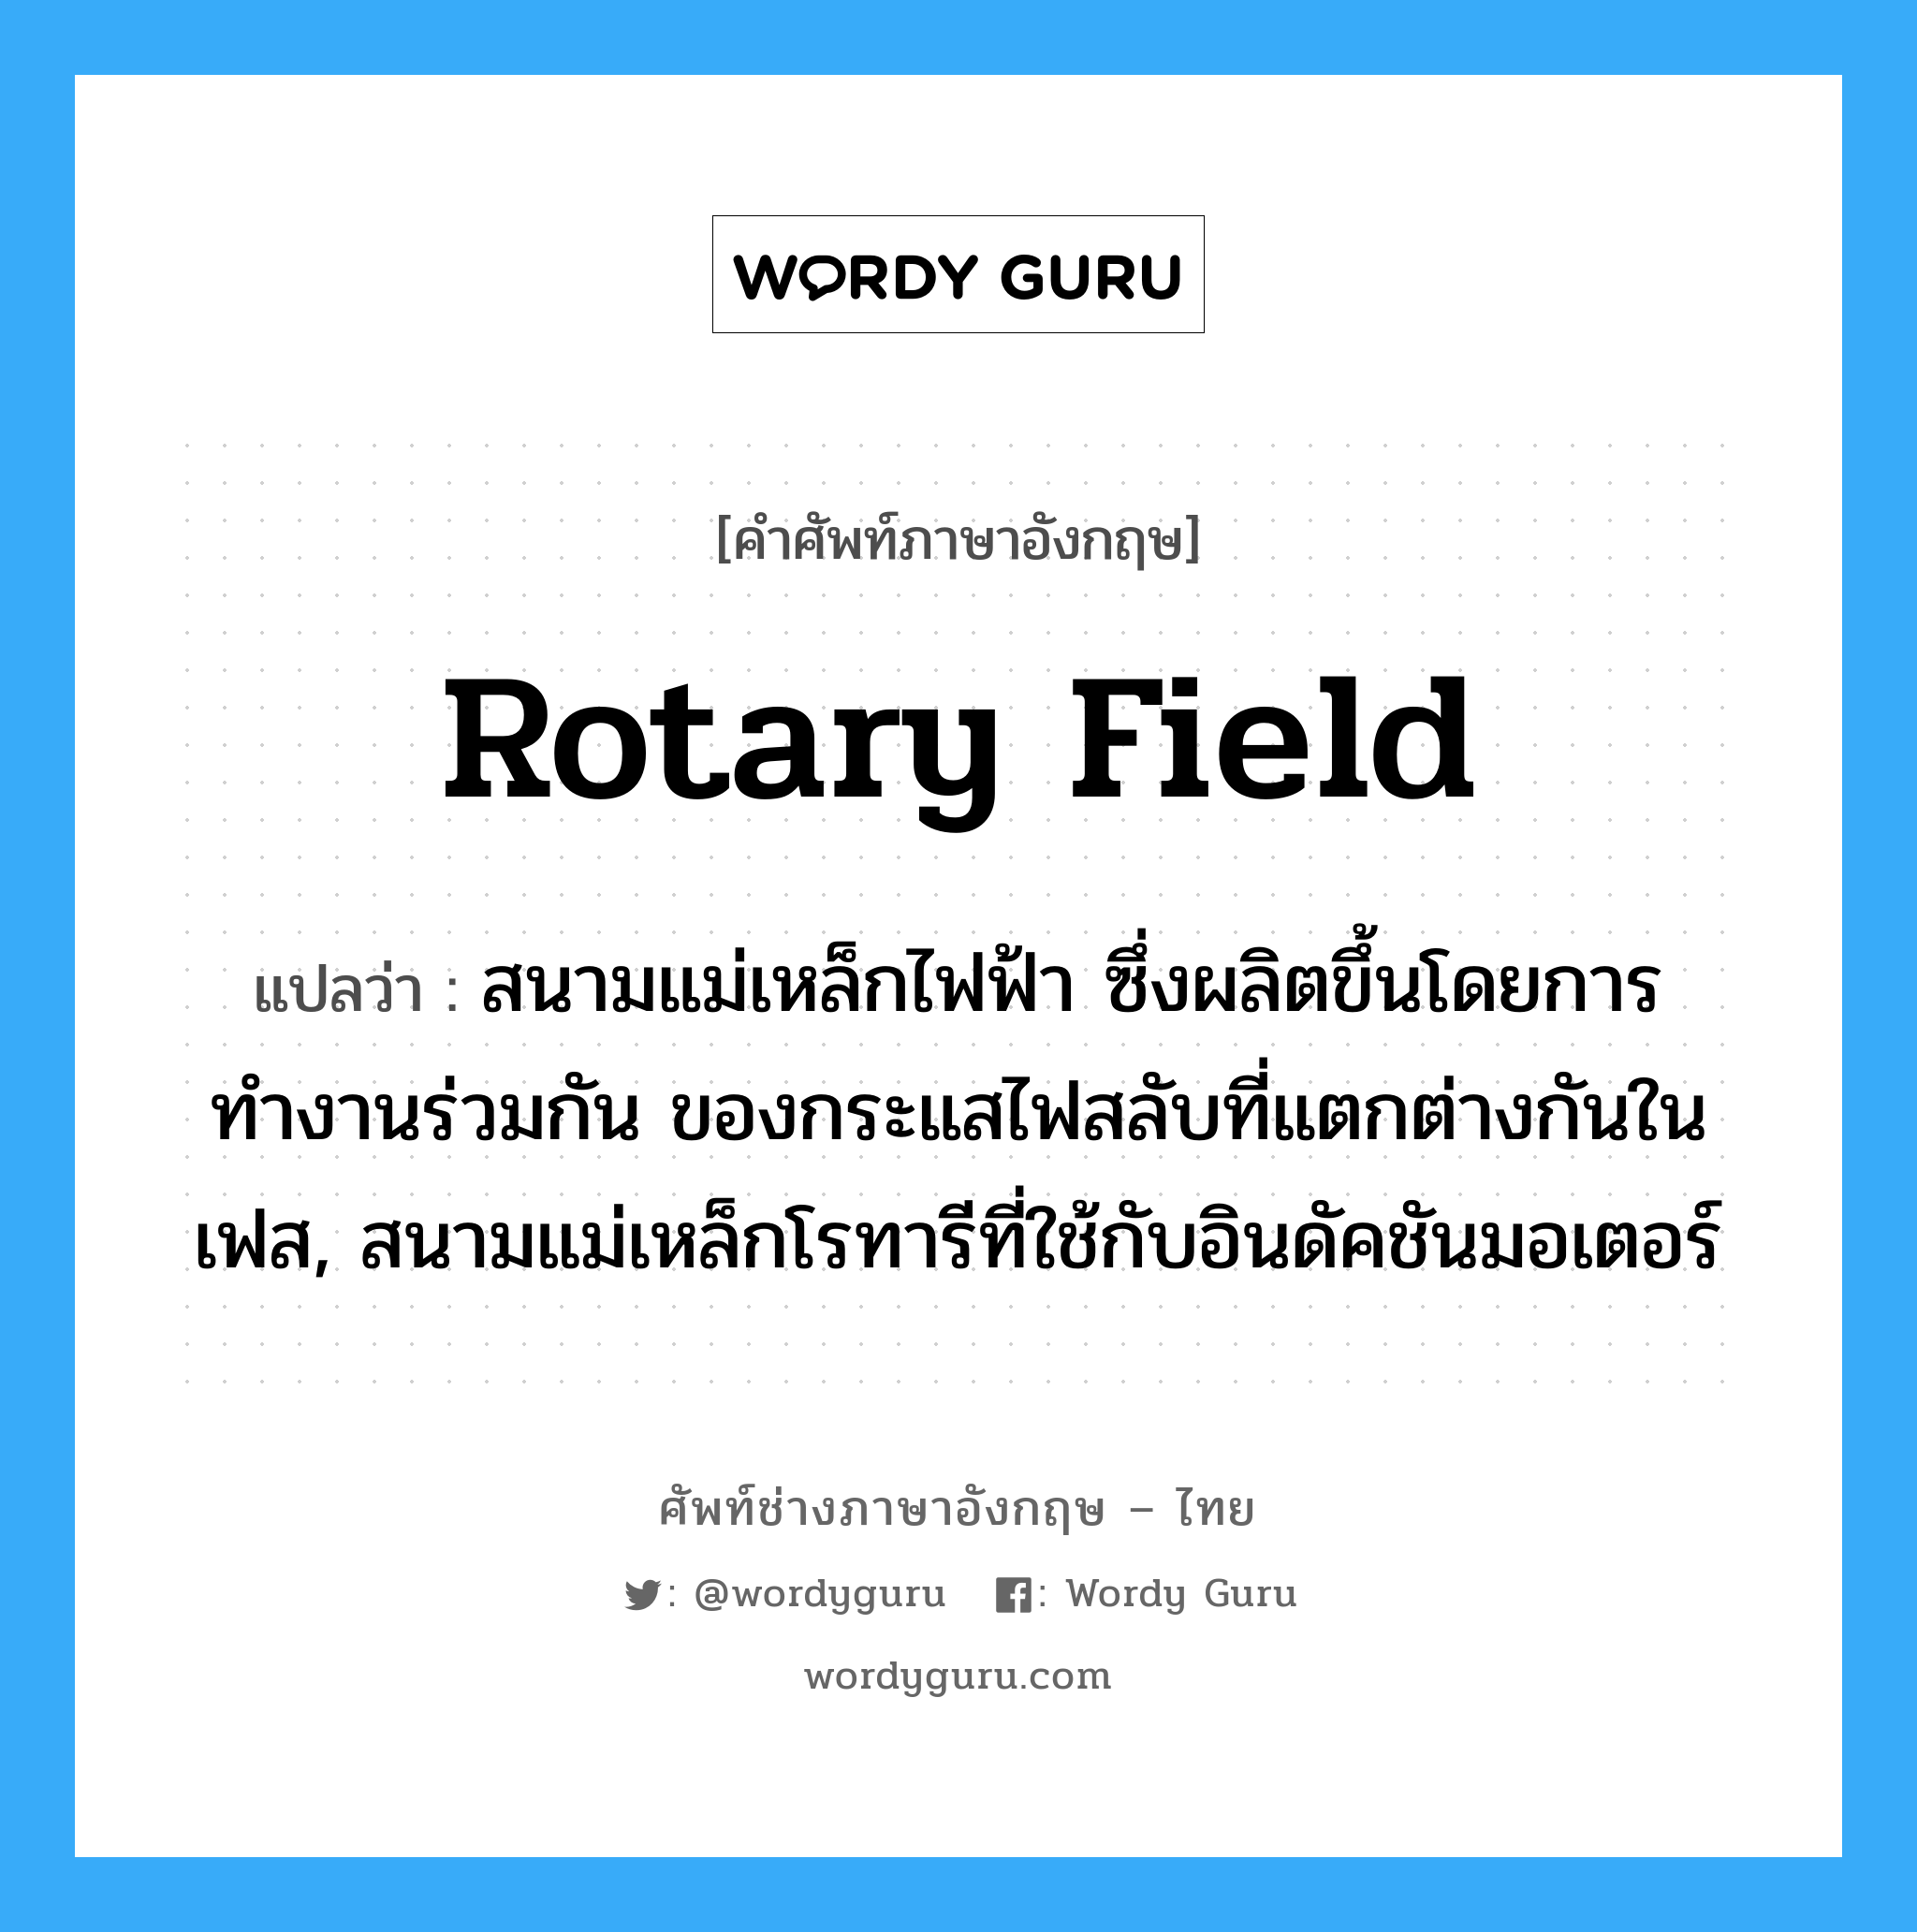 rotary field แปลว่า?, คำศัพท์ช่างภาษาอังกฤษ - ไทย rotary field คำศัพท์ภาษาอังกฤษ rotary field แปลว่า สนามแม่เหล็กไฟฟ้า ซึ่งผลิตขึ้นโดยการทำงานร่วมกัน ของกระแสไฟสลับที่แตกต่างกันในเฟส, สนามแม่เหล็กโรทารีที่ใช้กับอินดัคชันมอเตอร์